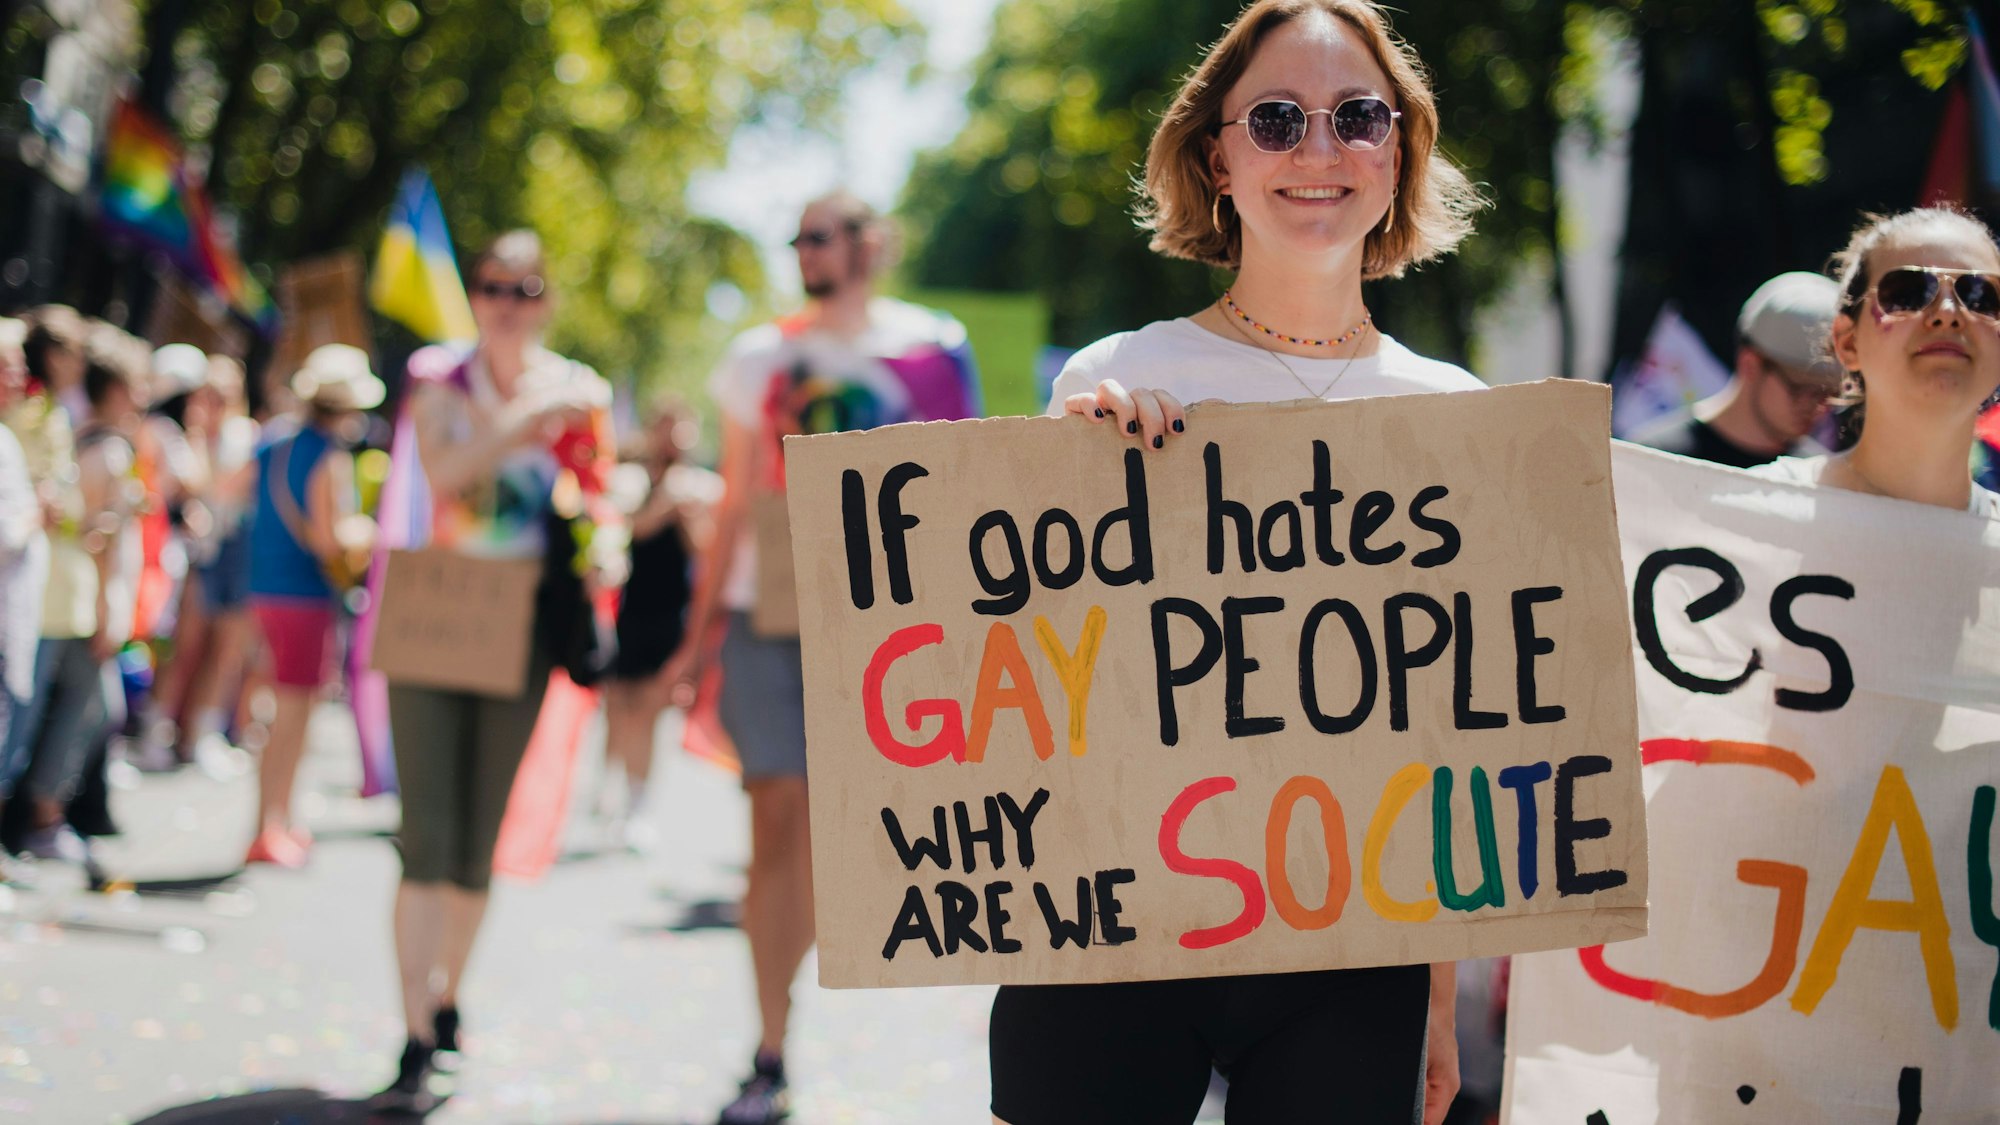 Frau mit Schildmit der Aufschrift „If god hates gay people, why are we so cute“.